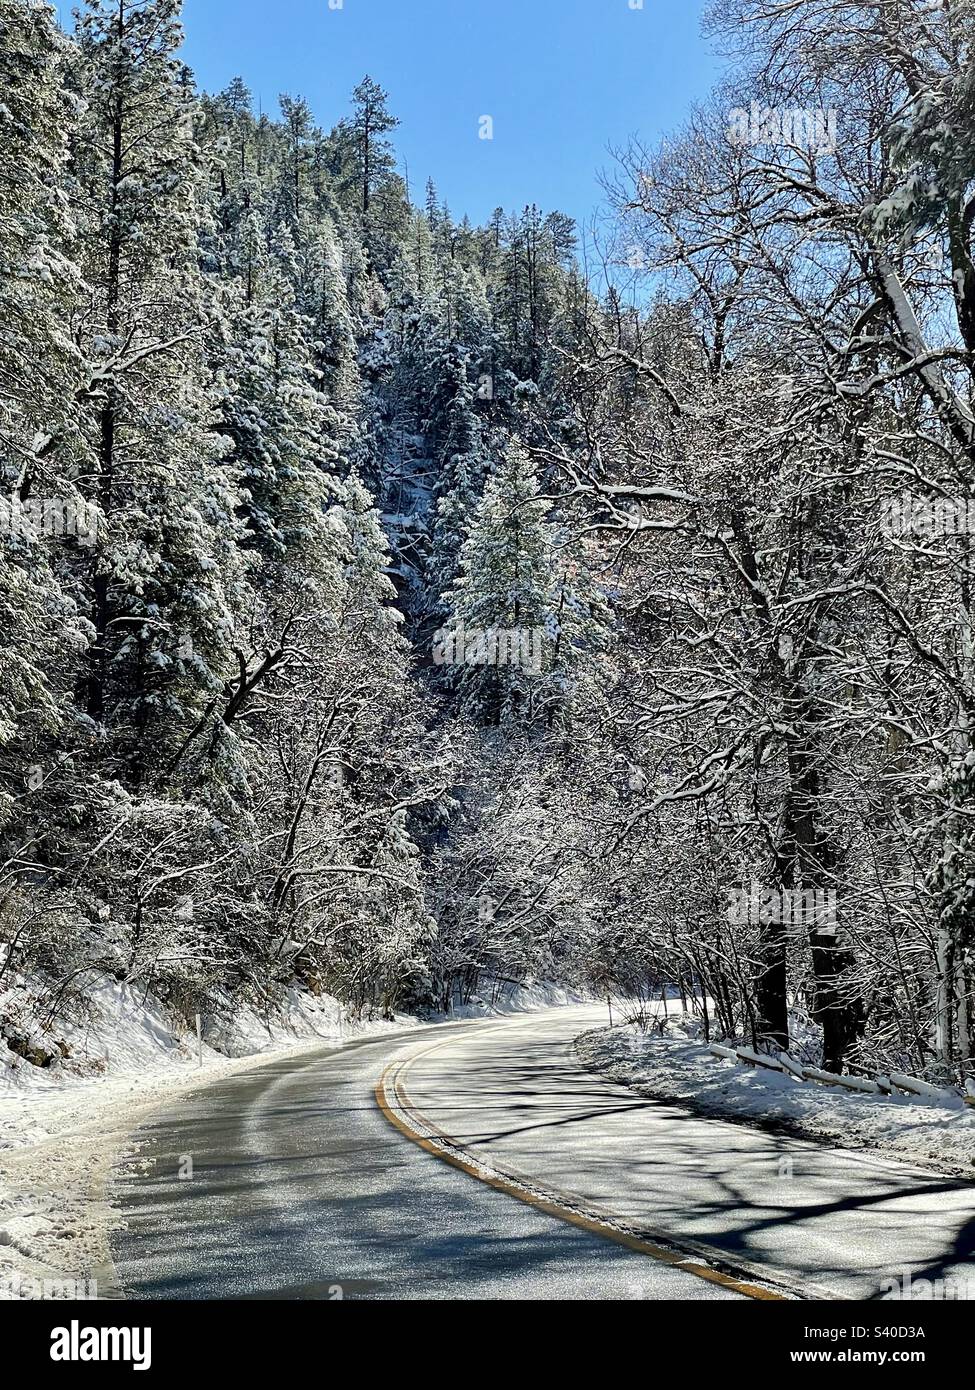 Winter Wonderland, Scenic Highway, 89A, Sedona, Arizona, prima nevicata, pinete carico di neve, cielo blu brillante, sole brillante su rami ghiacciati, vista sud Foto Stock